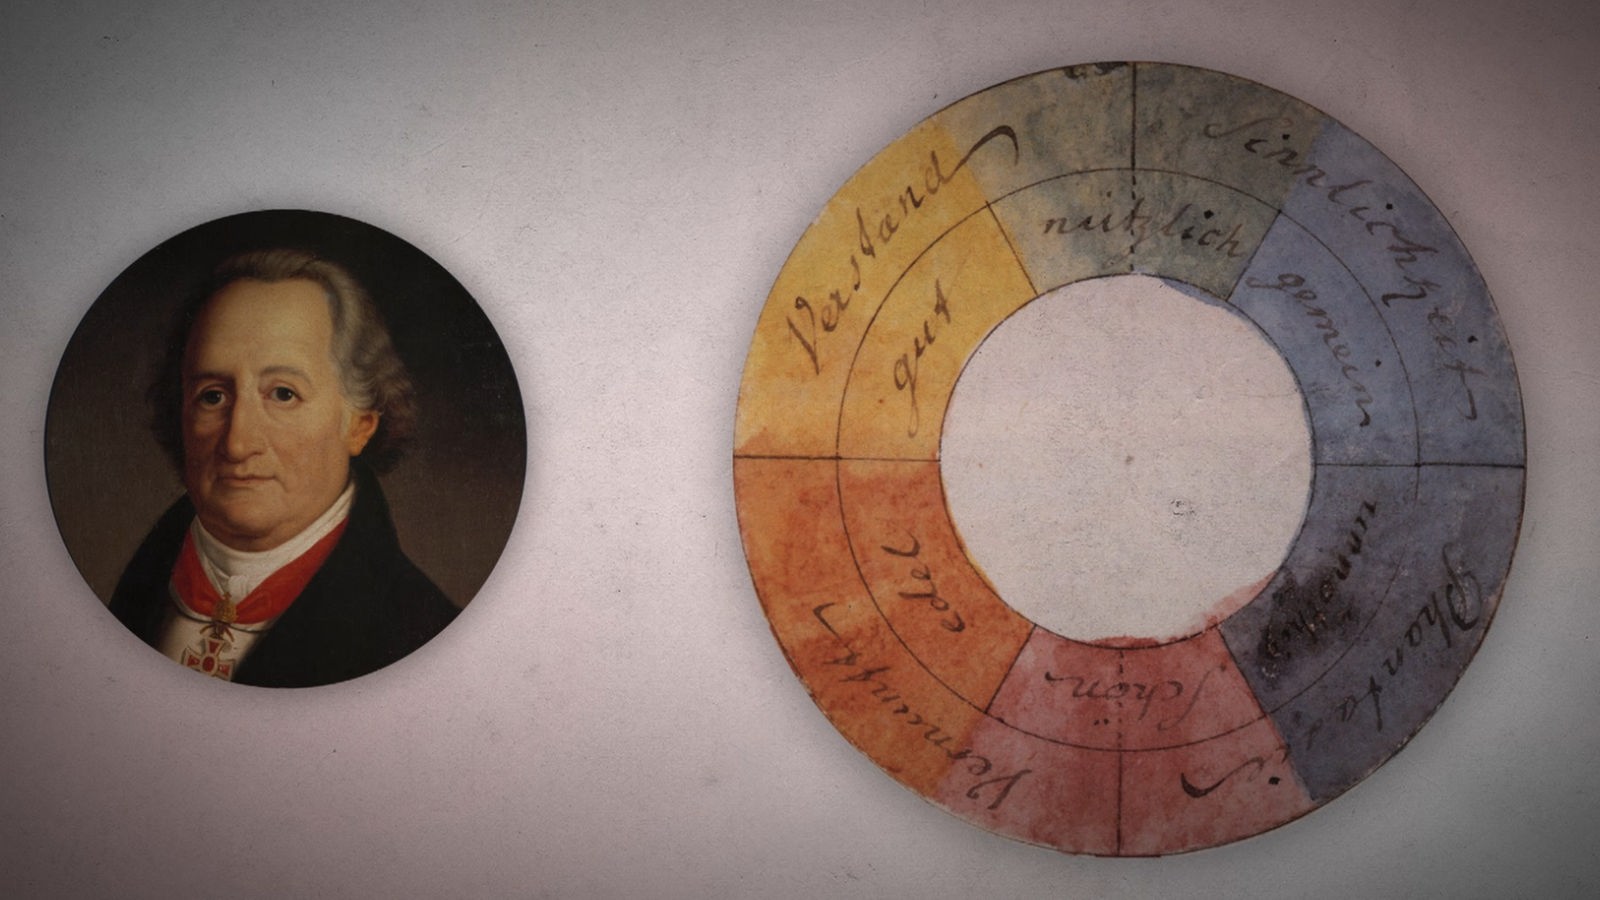 Porträt von Goethe neben seinem Farbkreis